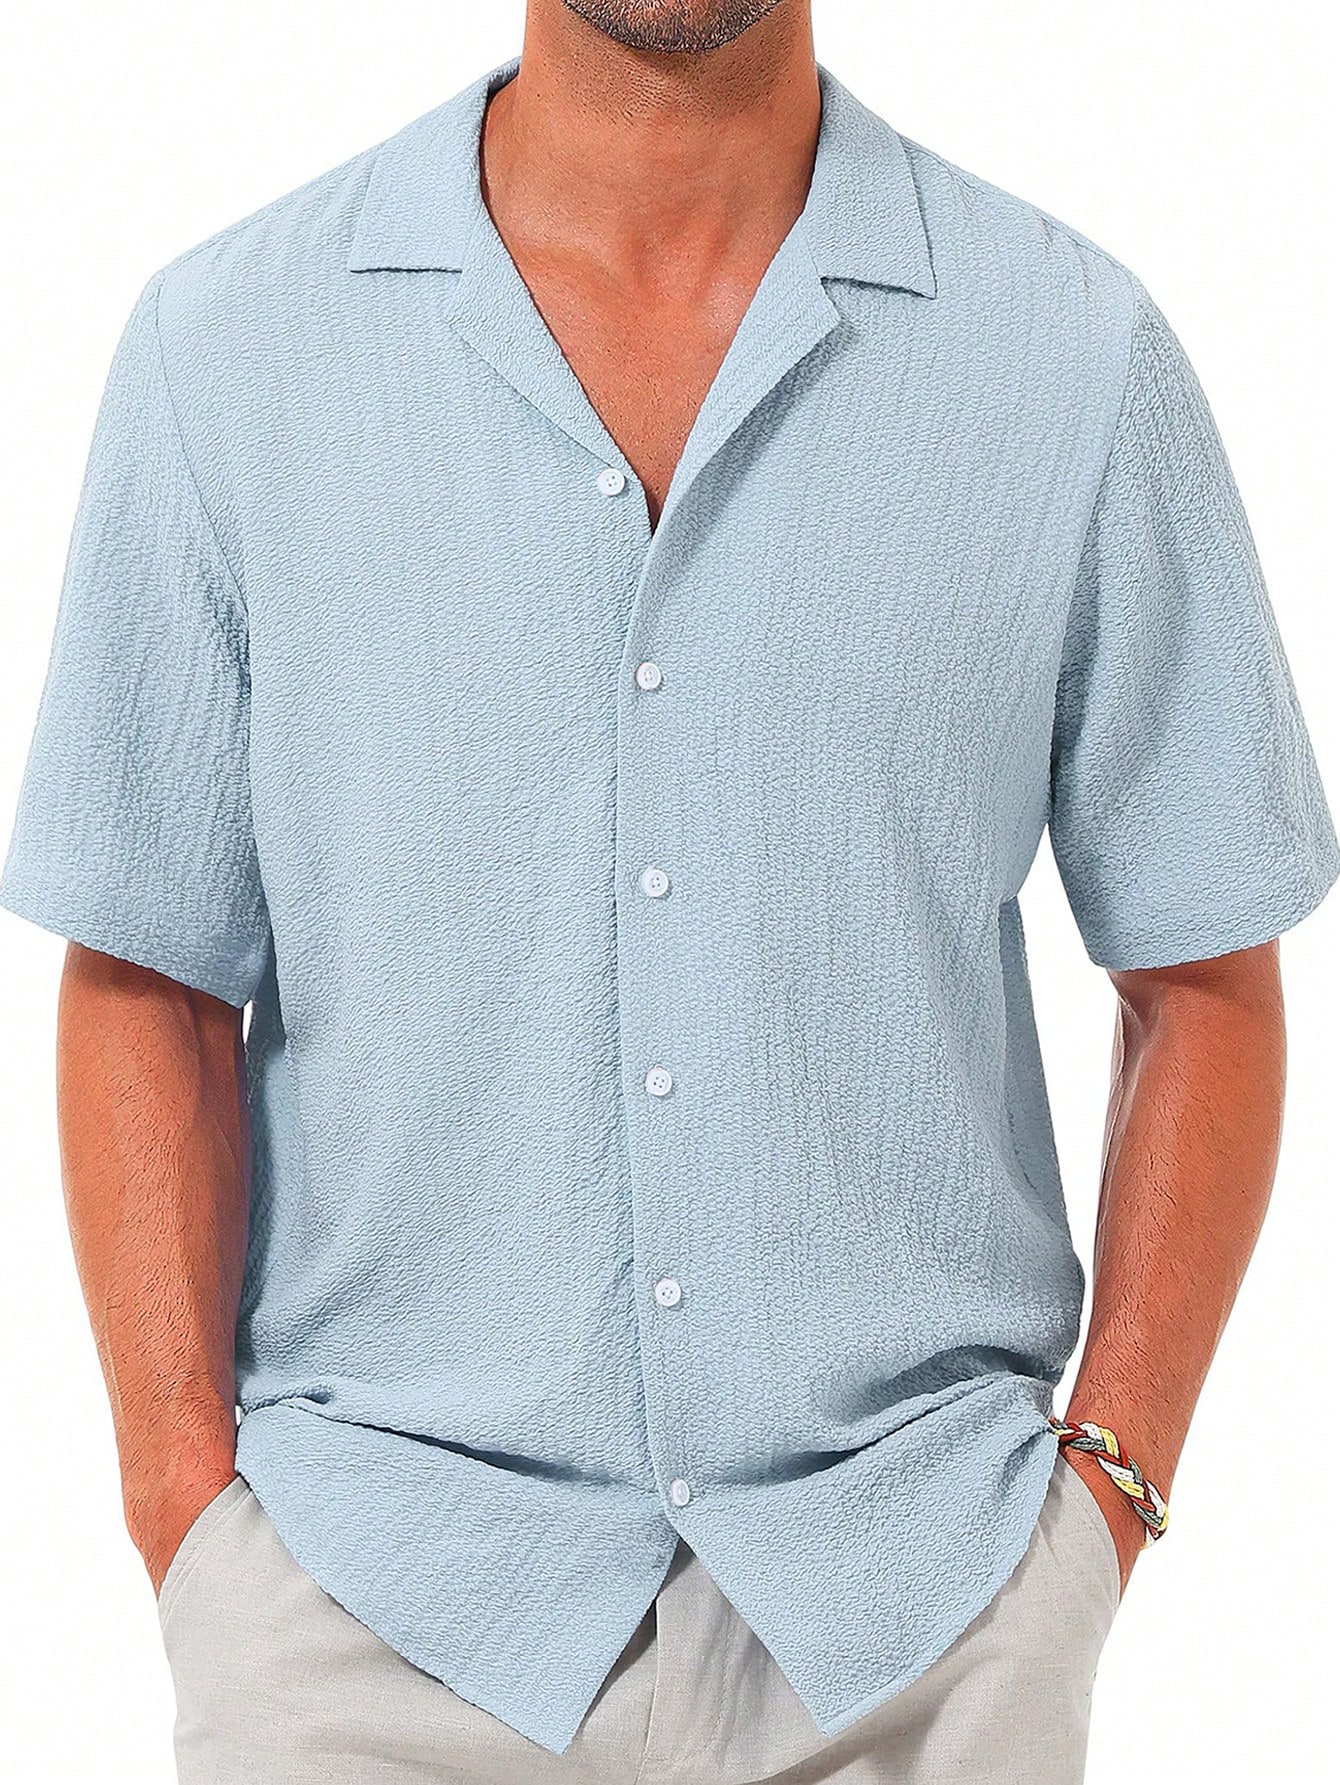 Мужская повседневная рубашка с коротким рукавом на пуговицах, синий мужская повседневная рубашка с коротким рукавом на пуговицах бежевый